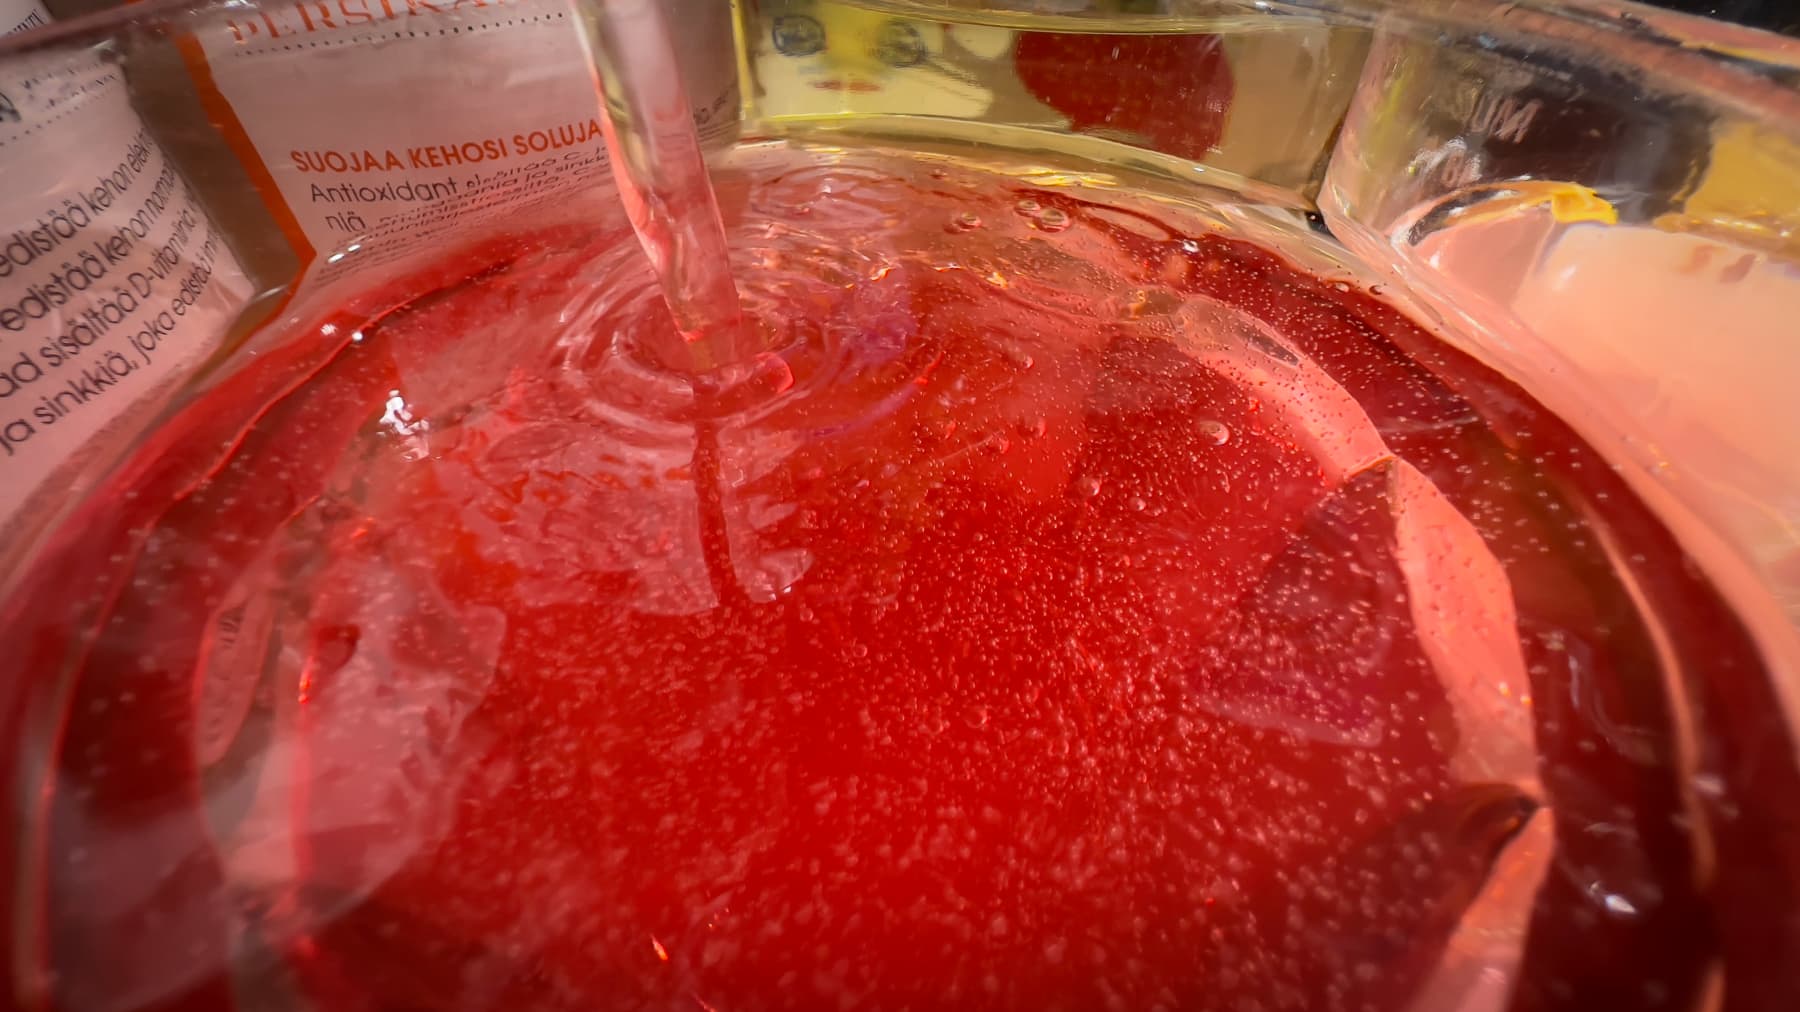 Punaista vitamiinijuomaa lasissa.